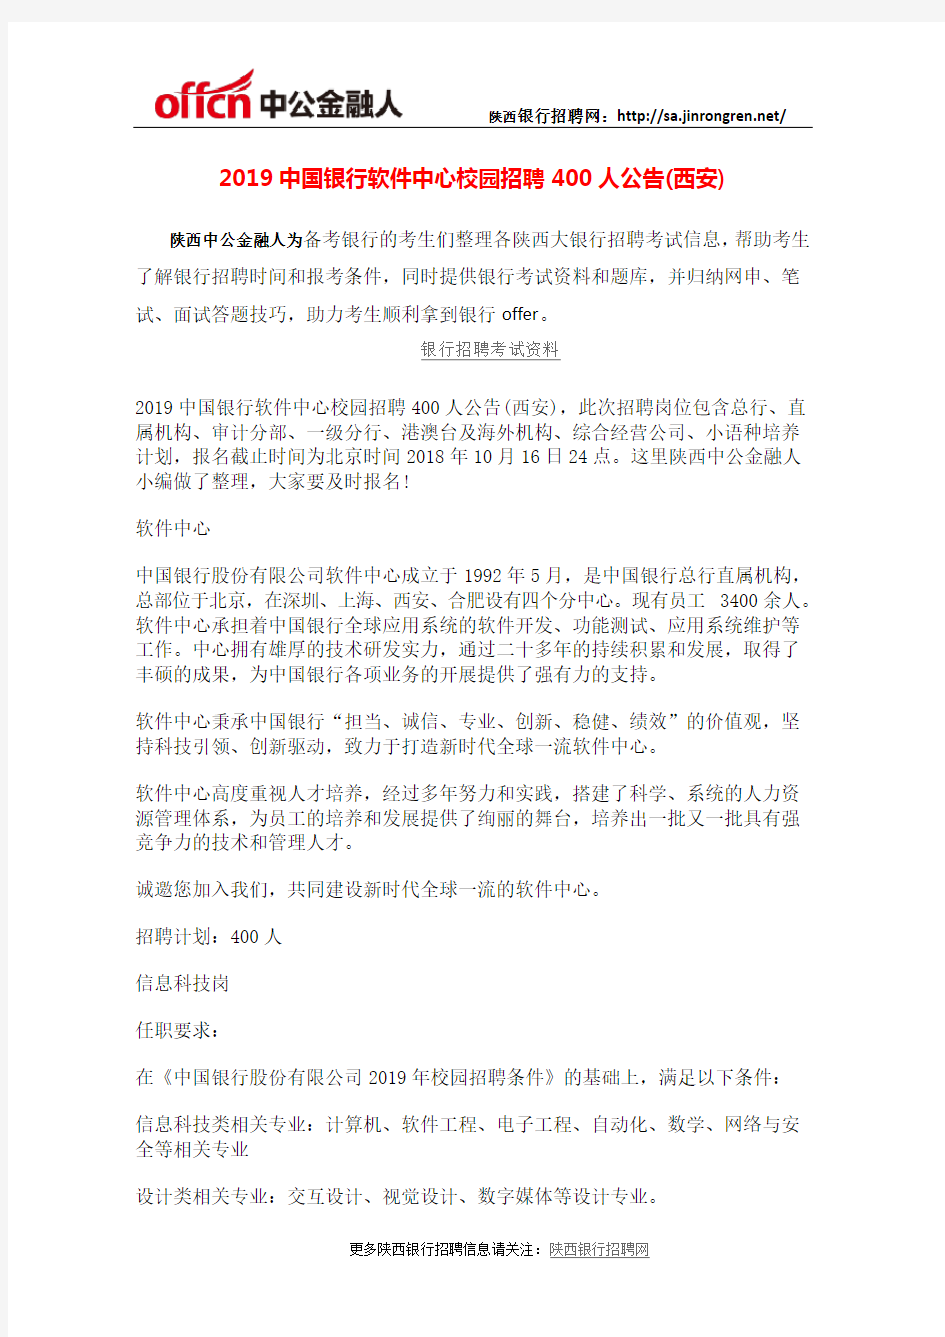 2019中国银行软件中心校园招聘400人公告(西安)